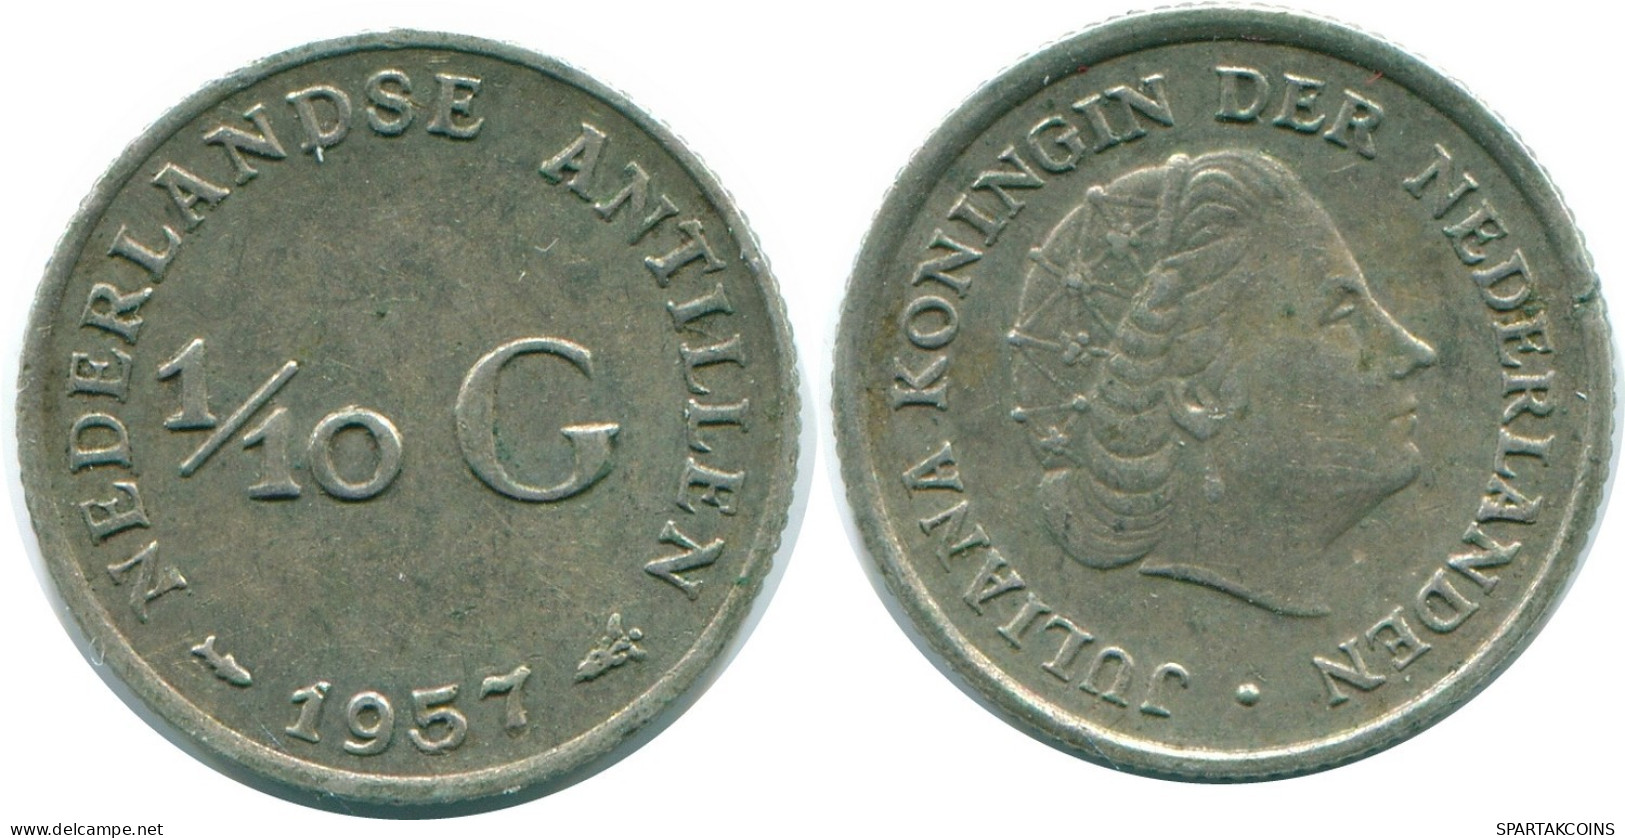 1/10 GULDEN 1957 NIEDERLÄNDISCHE ANTILLEN SILBER Koloniale Münze #NL12168.3.D.A - Niederländische Antillen